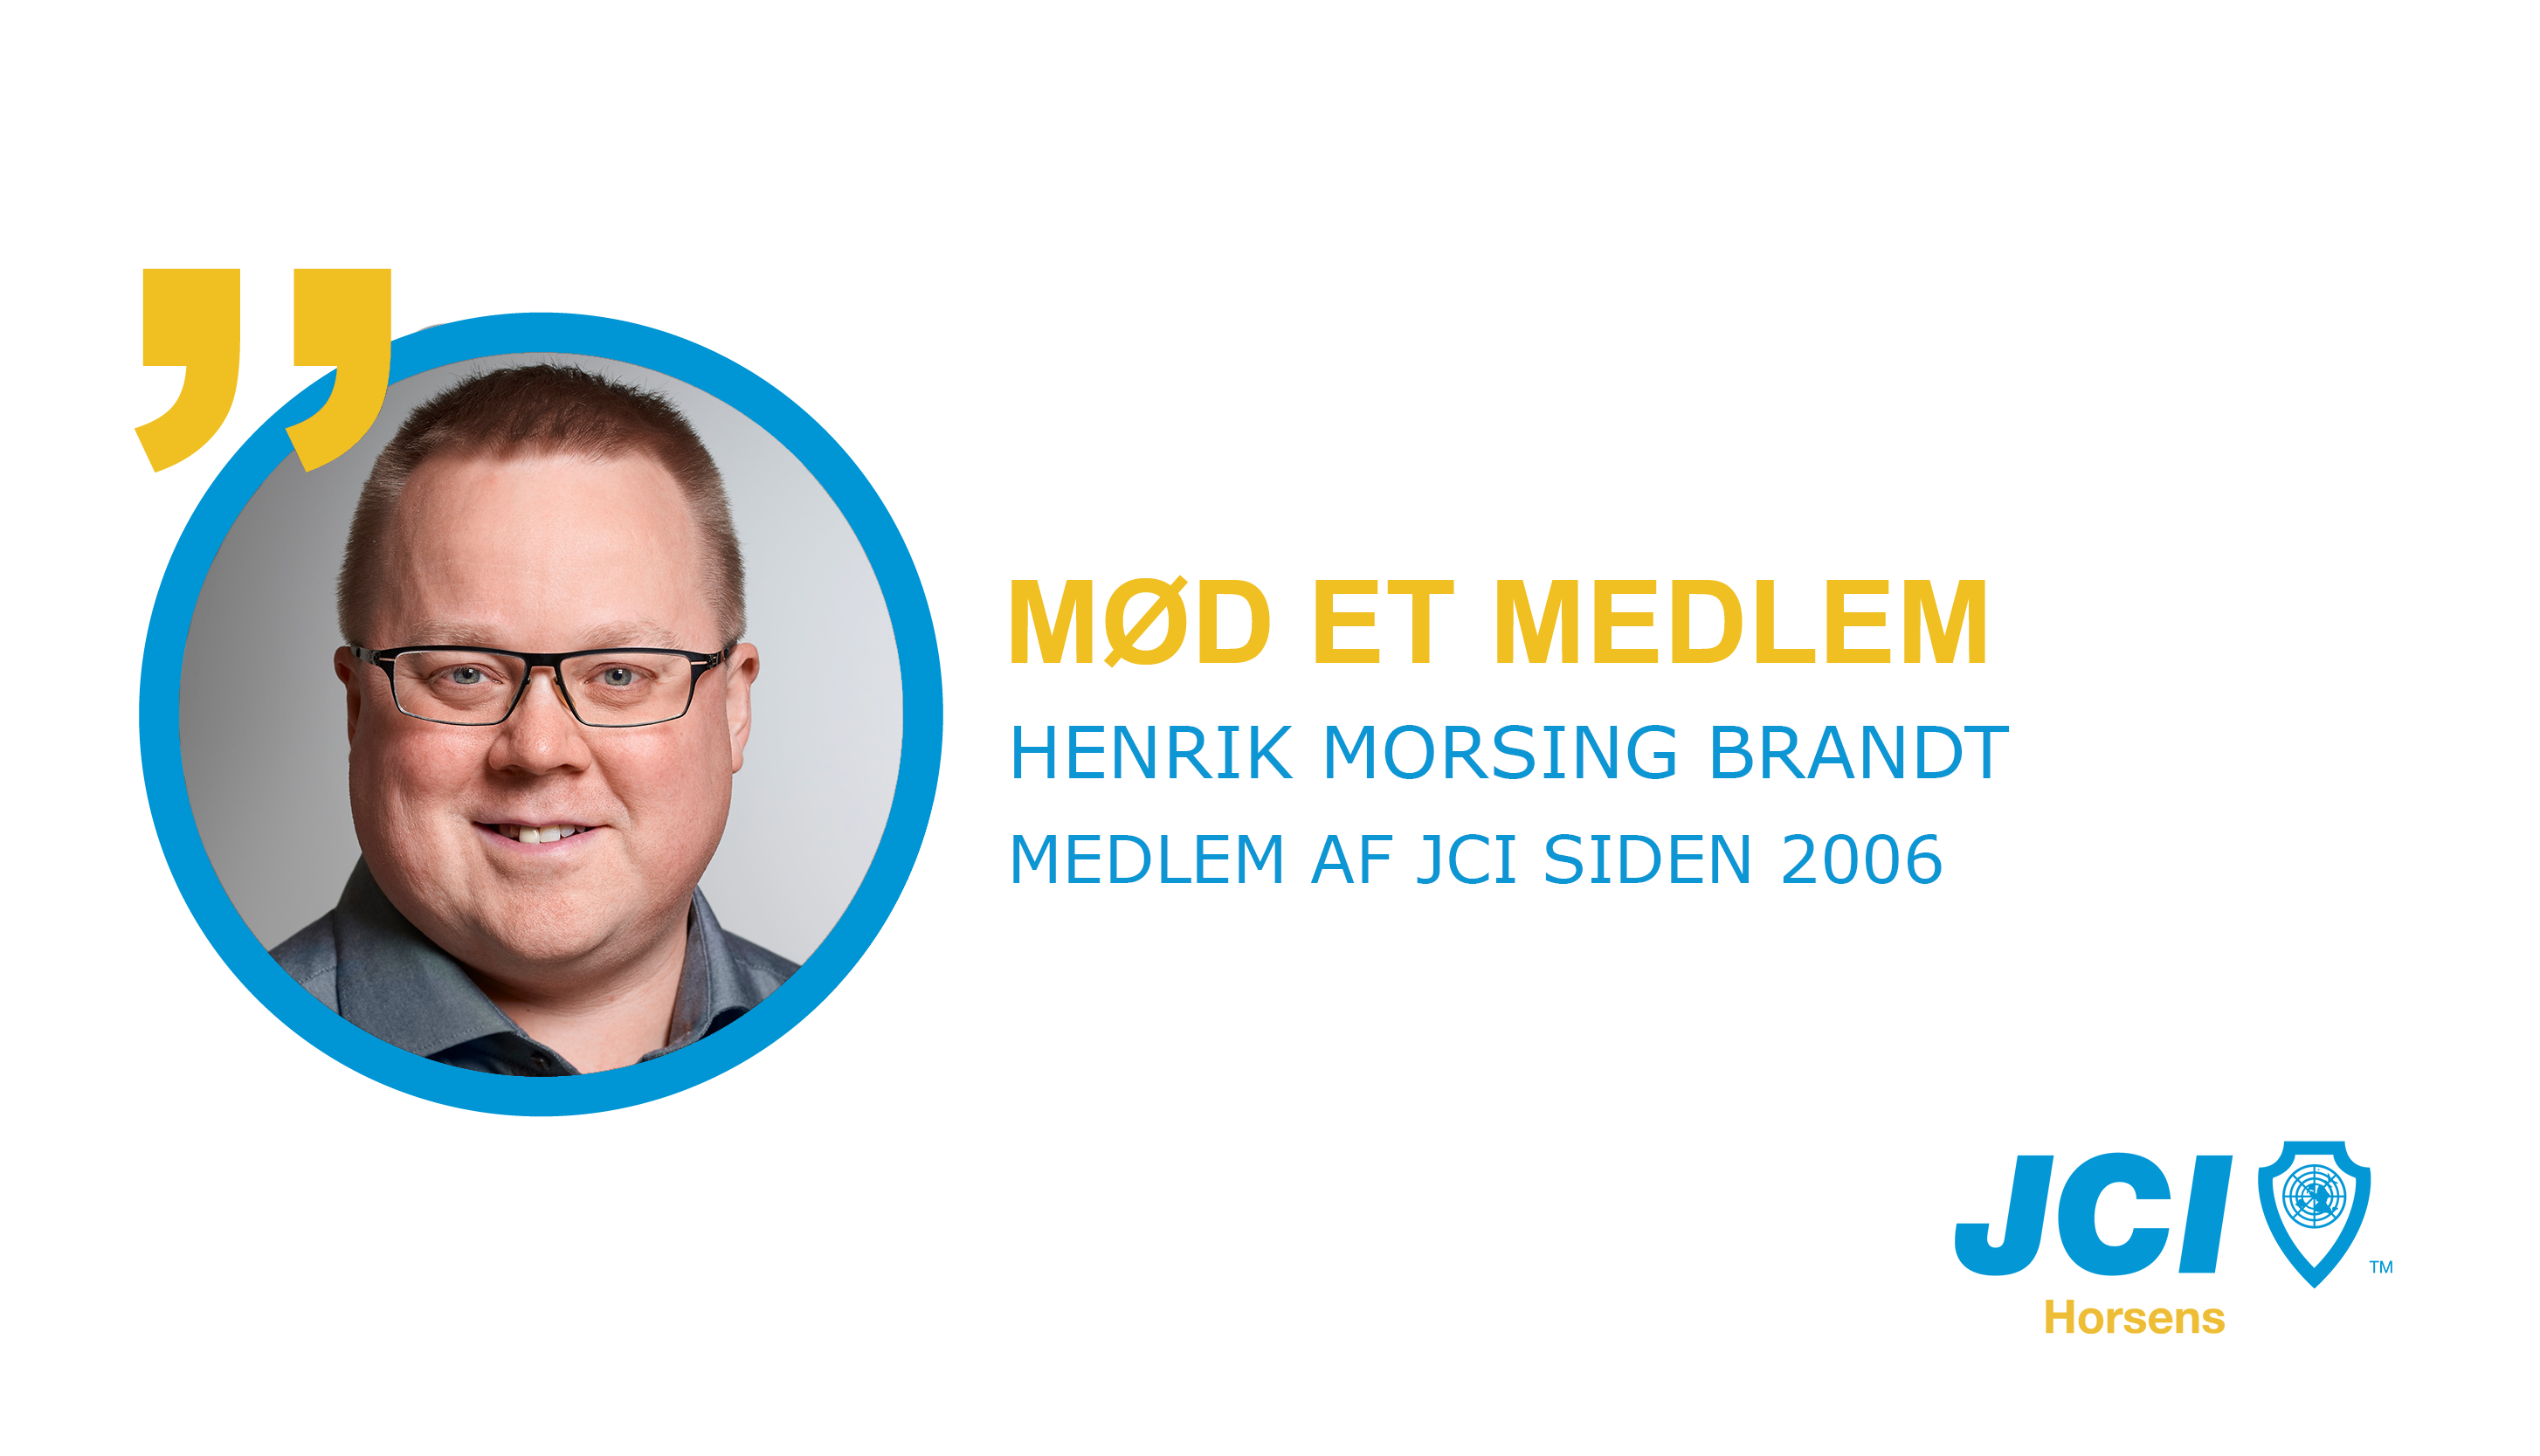 Mod-et-medlem-JCI-Horsens_Henrik_Morsing_Brandt